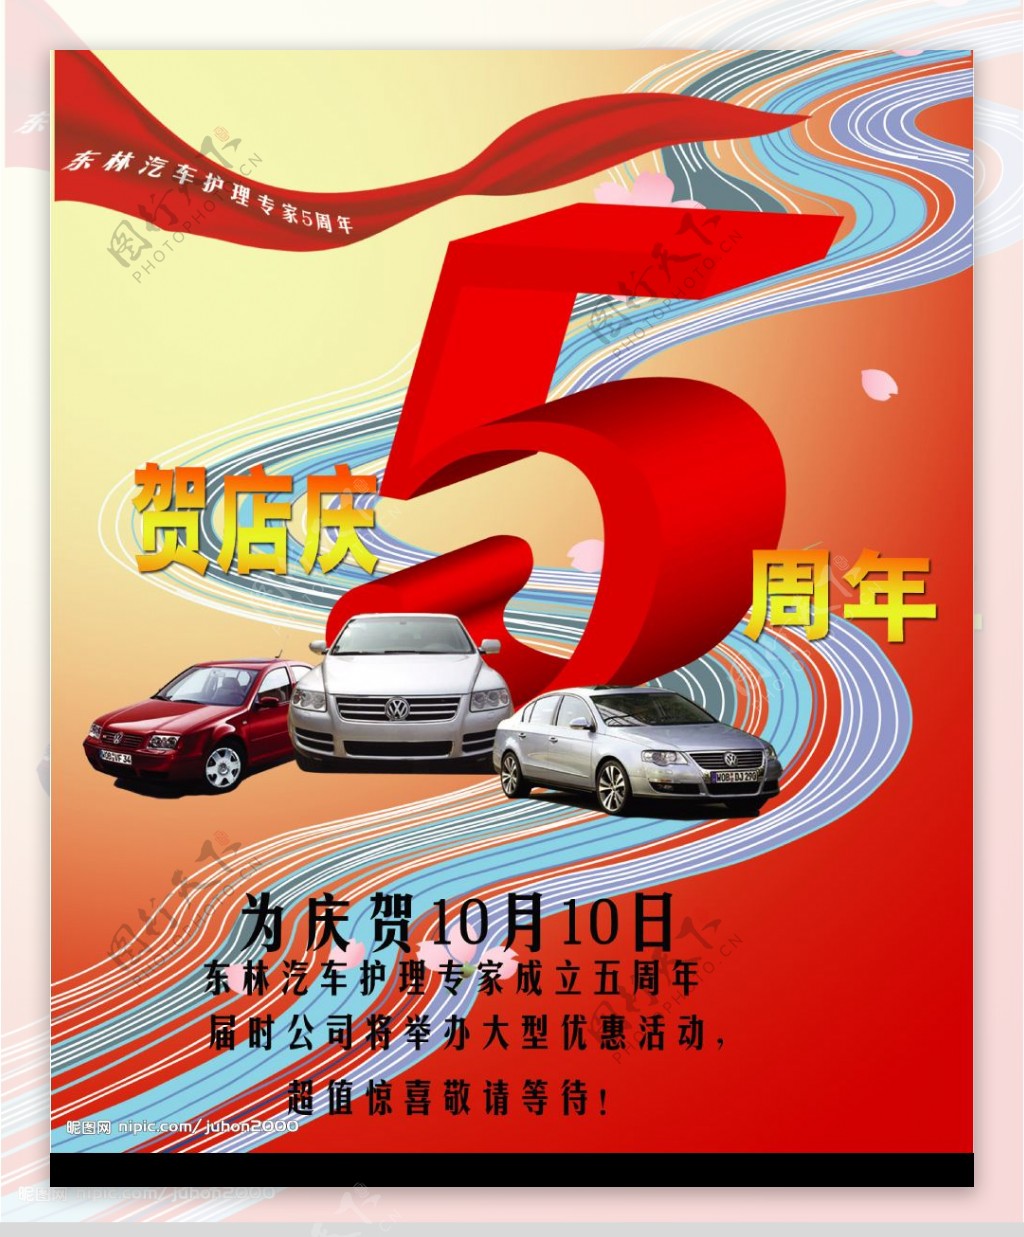 东林汽车五周年庆典活动宣传图片